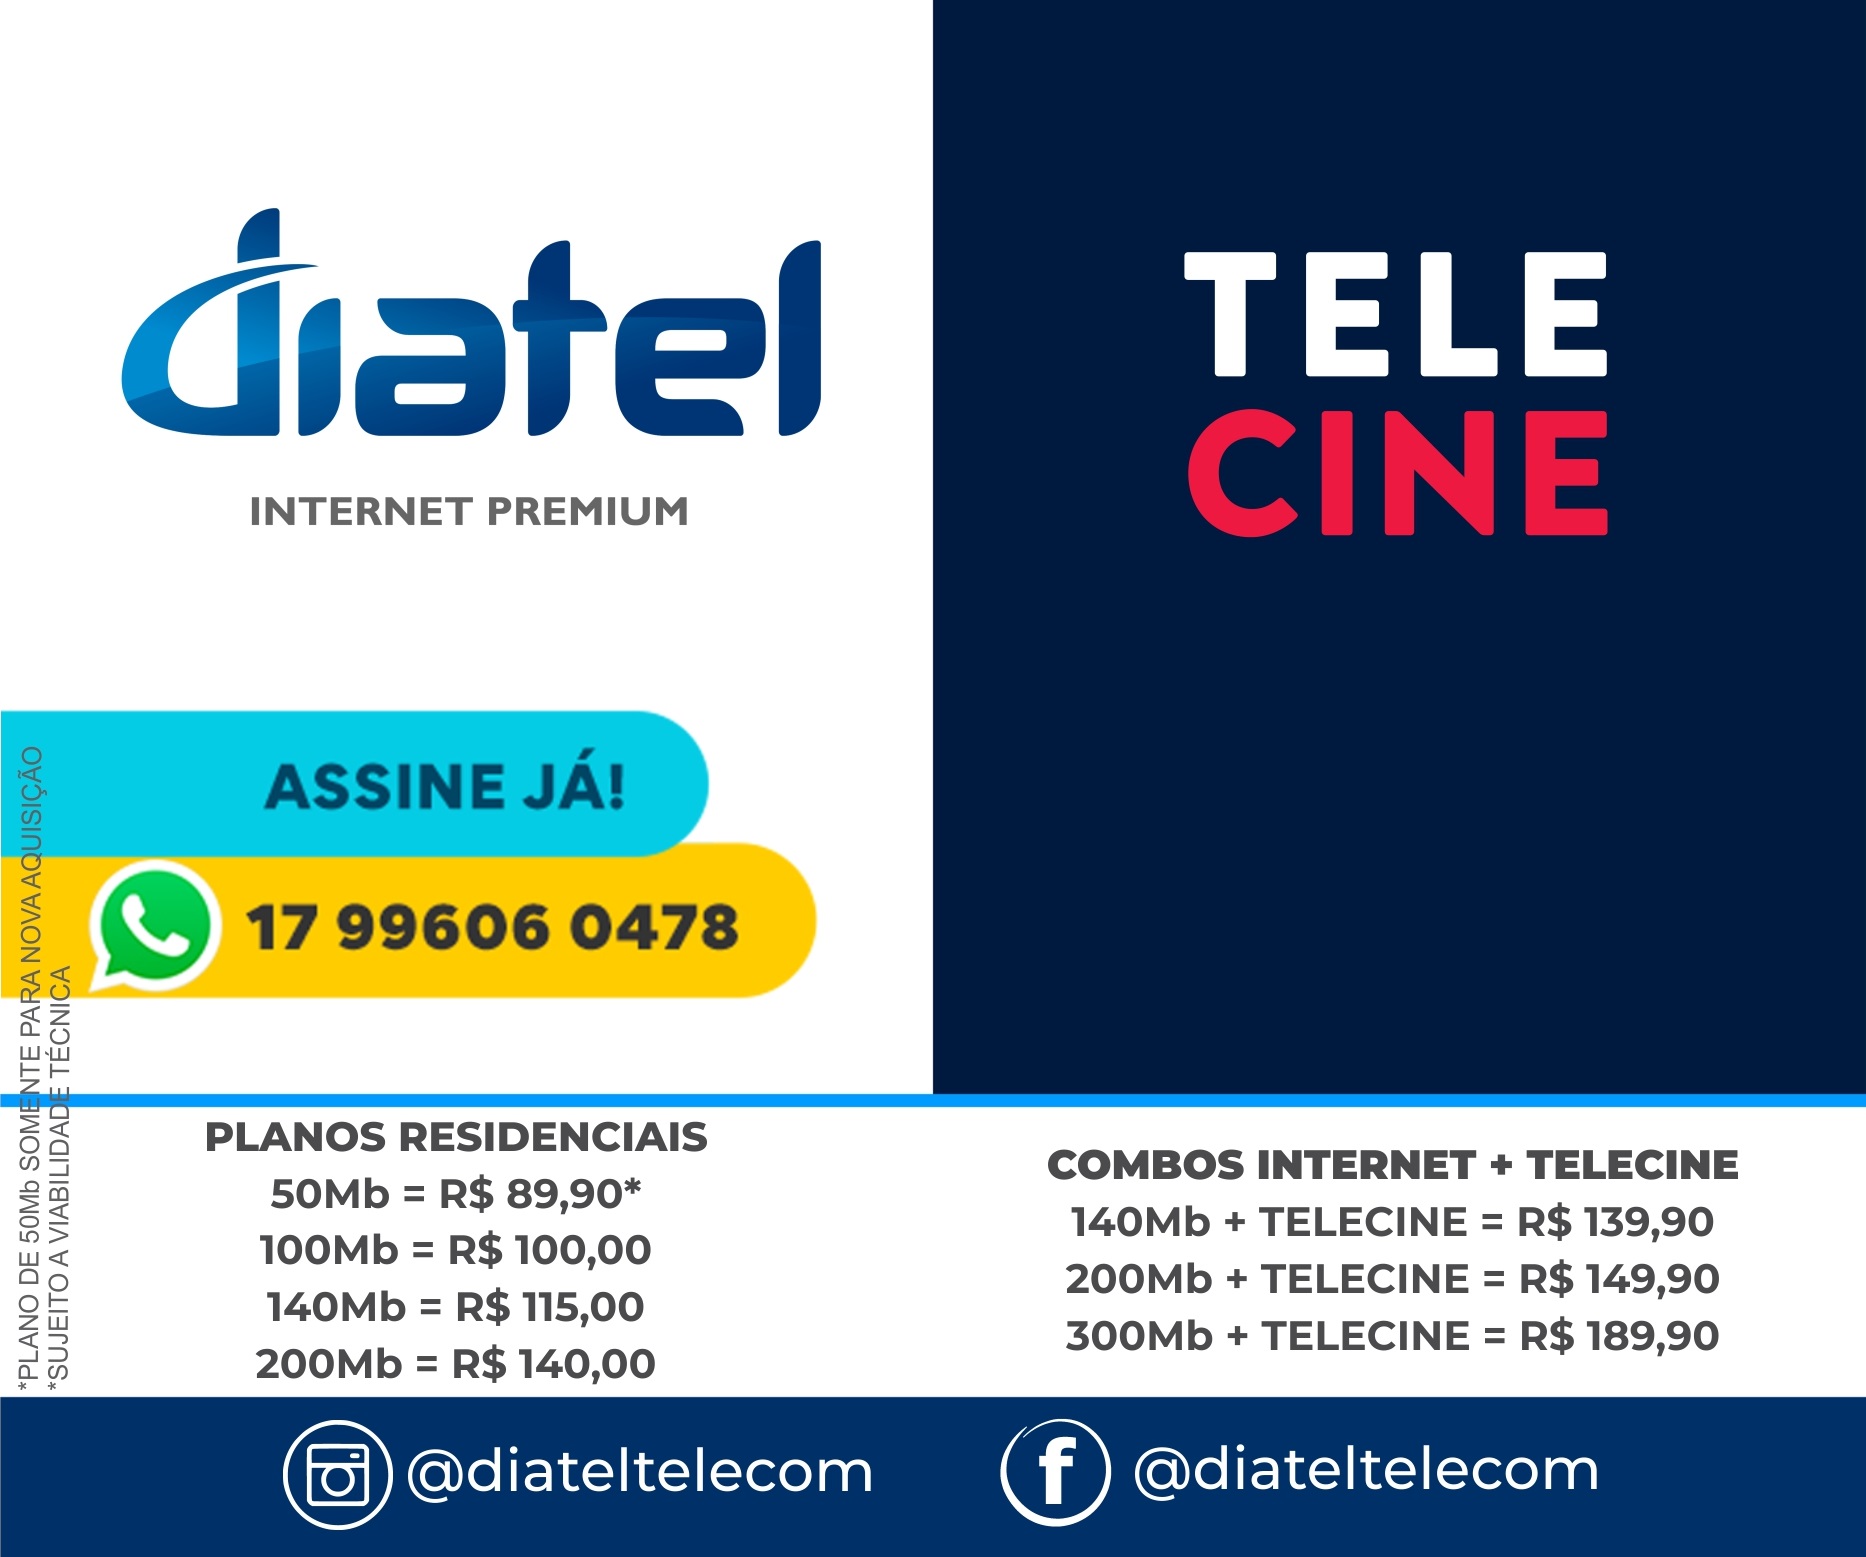 Diatel | Internet Premium e Telecine